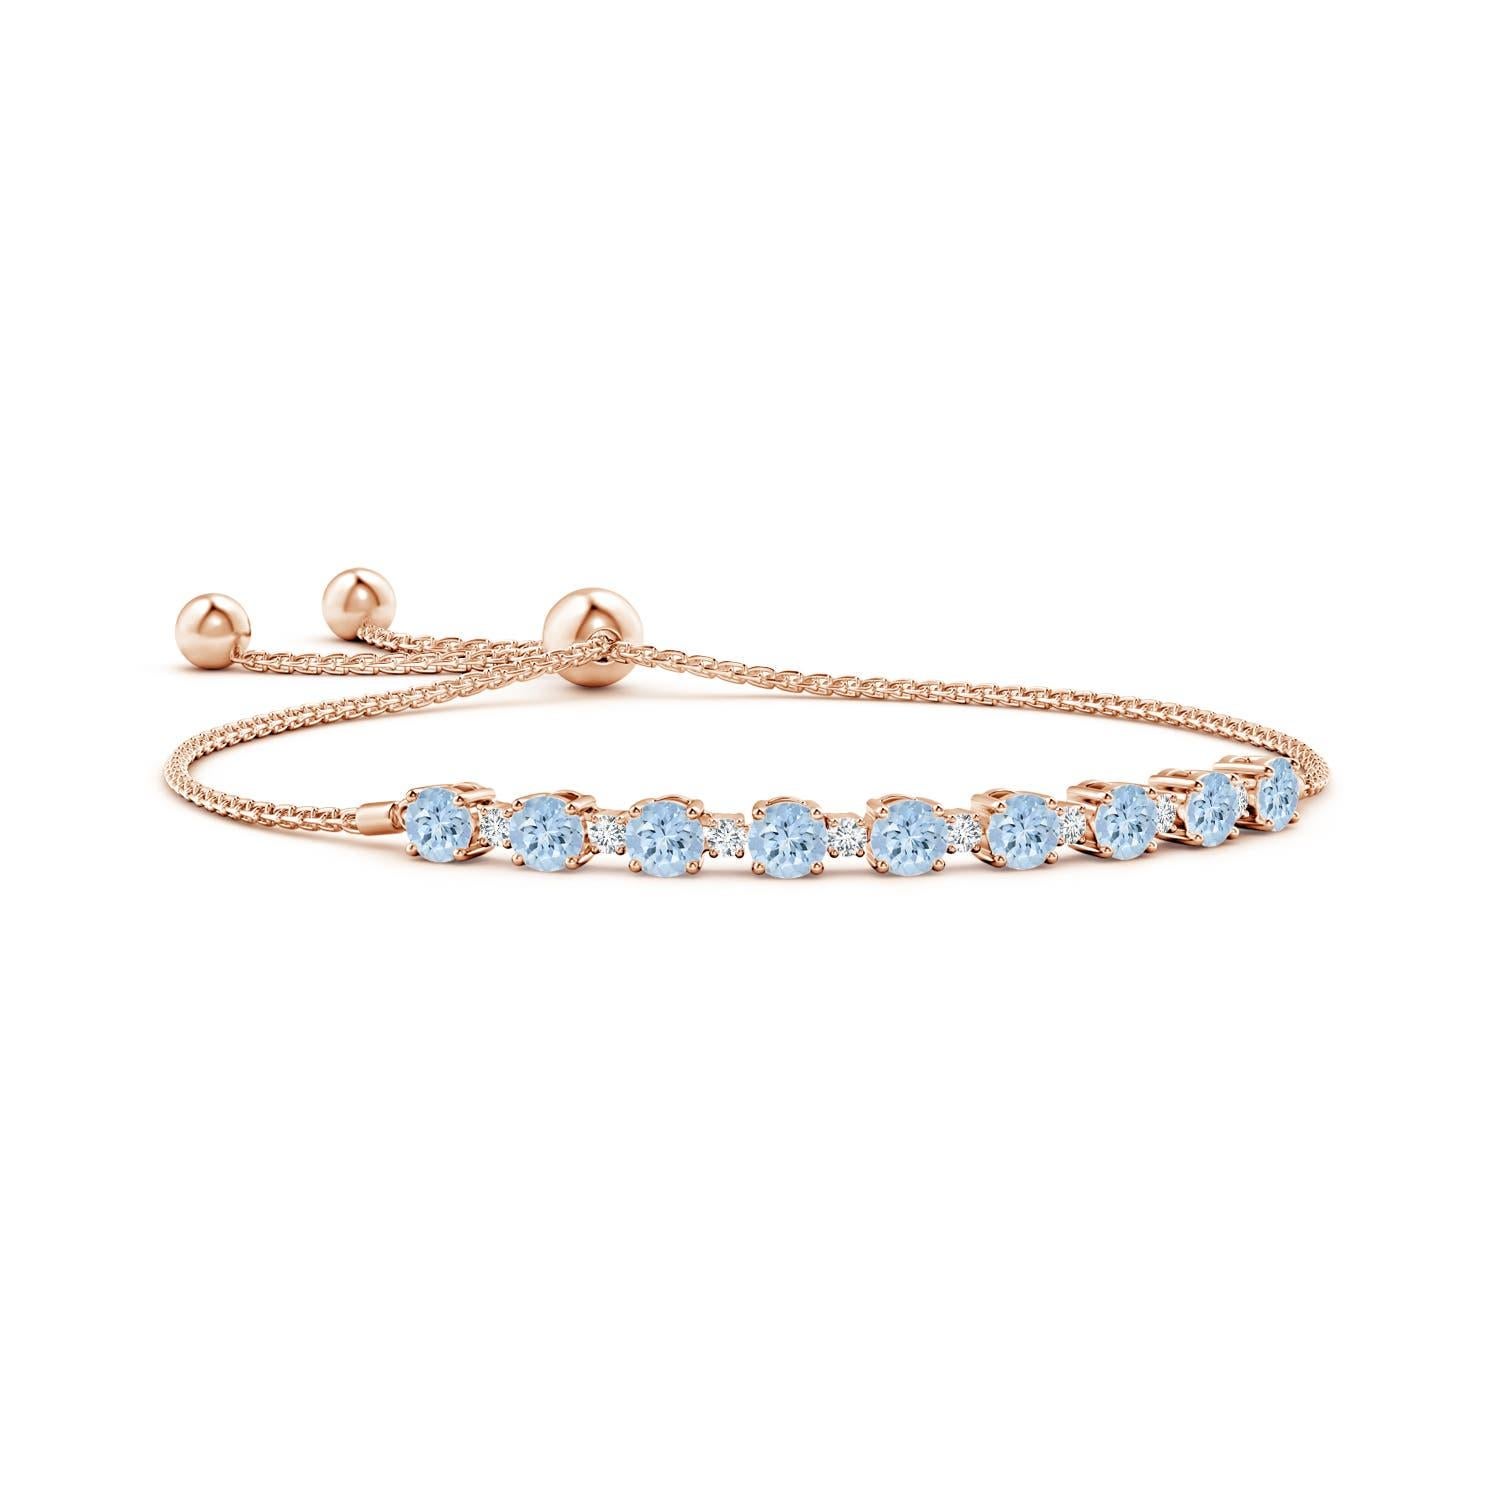 Des aigues-marines bleues et des diamants scintillants sont réunis sur ce bracelet bolo en or rose 14 carats. Elles sont serties en alternance et créent un look classique. Ce bracelet est réglable pour s'adapter à la plupart des poignets.